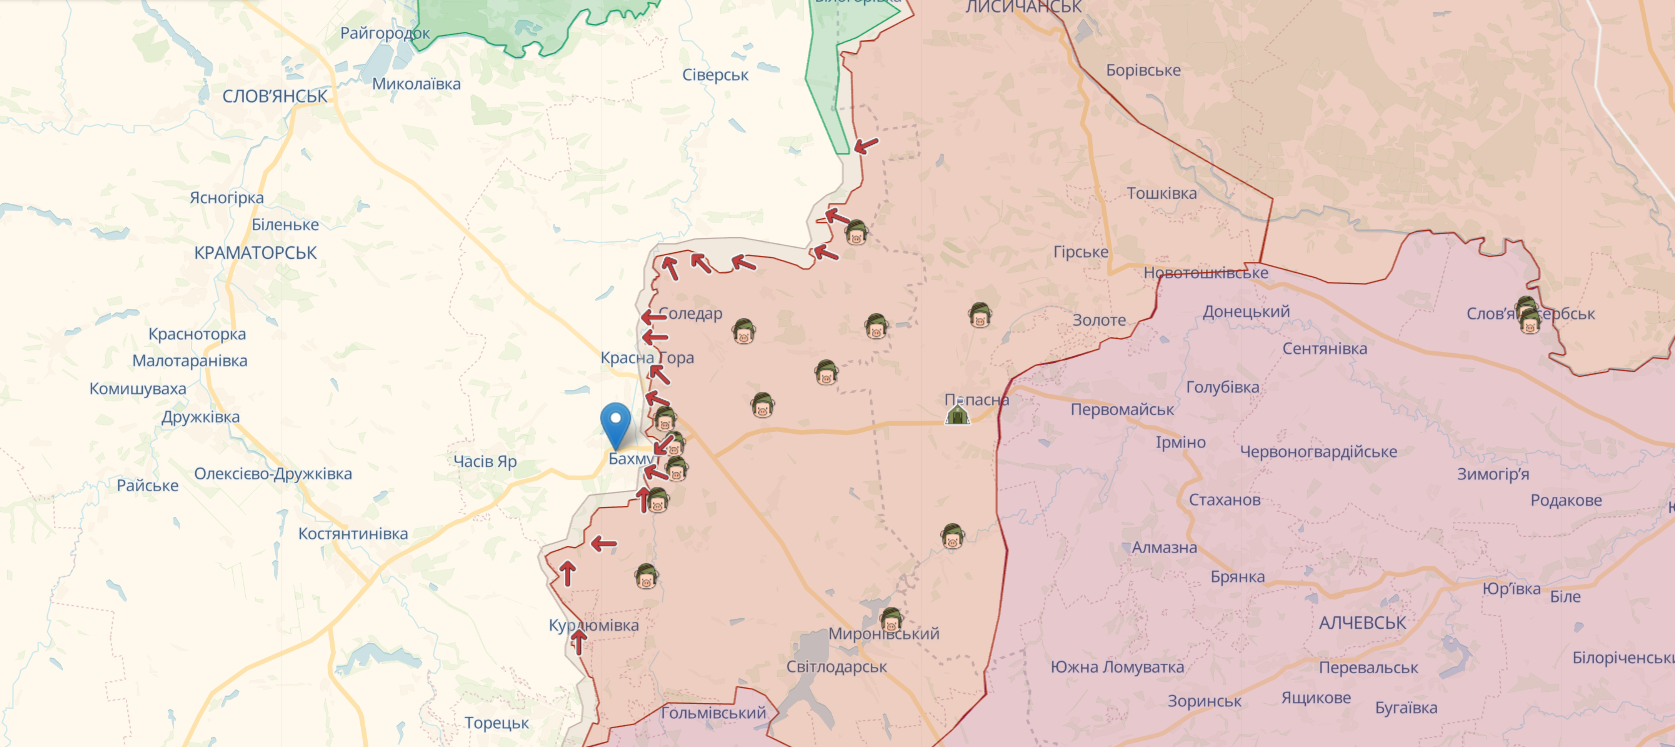 Українські прикордонники захопили позицію окупантів біля Бахмута: загарбникам довелося тікати. Відео 